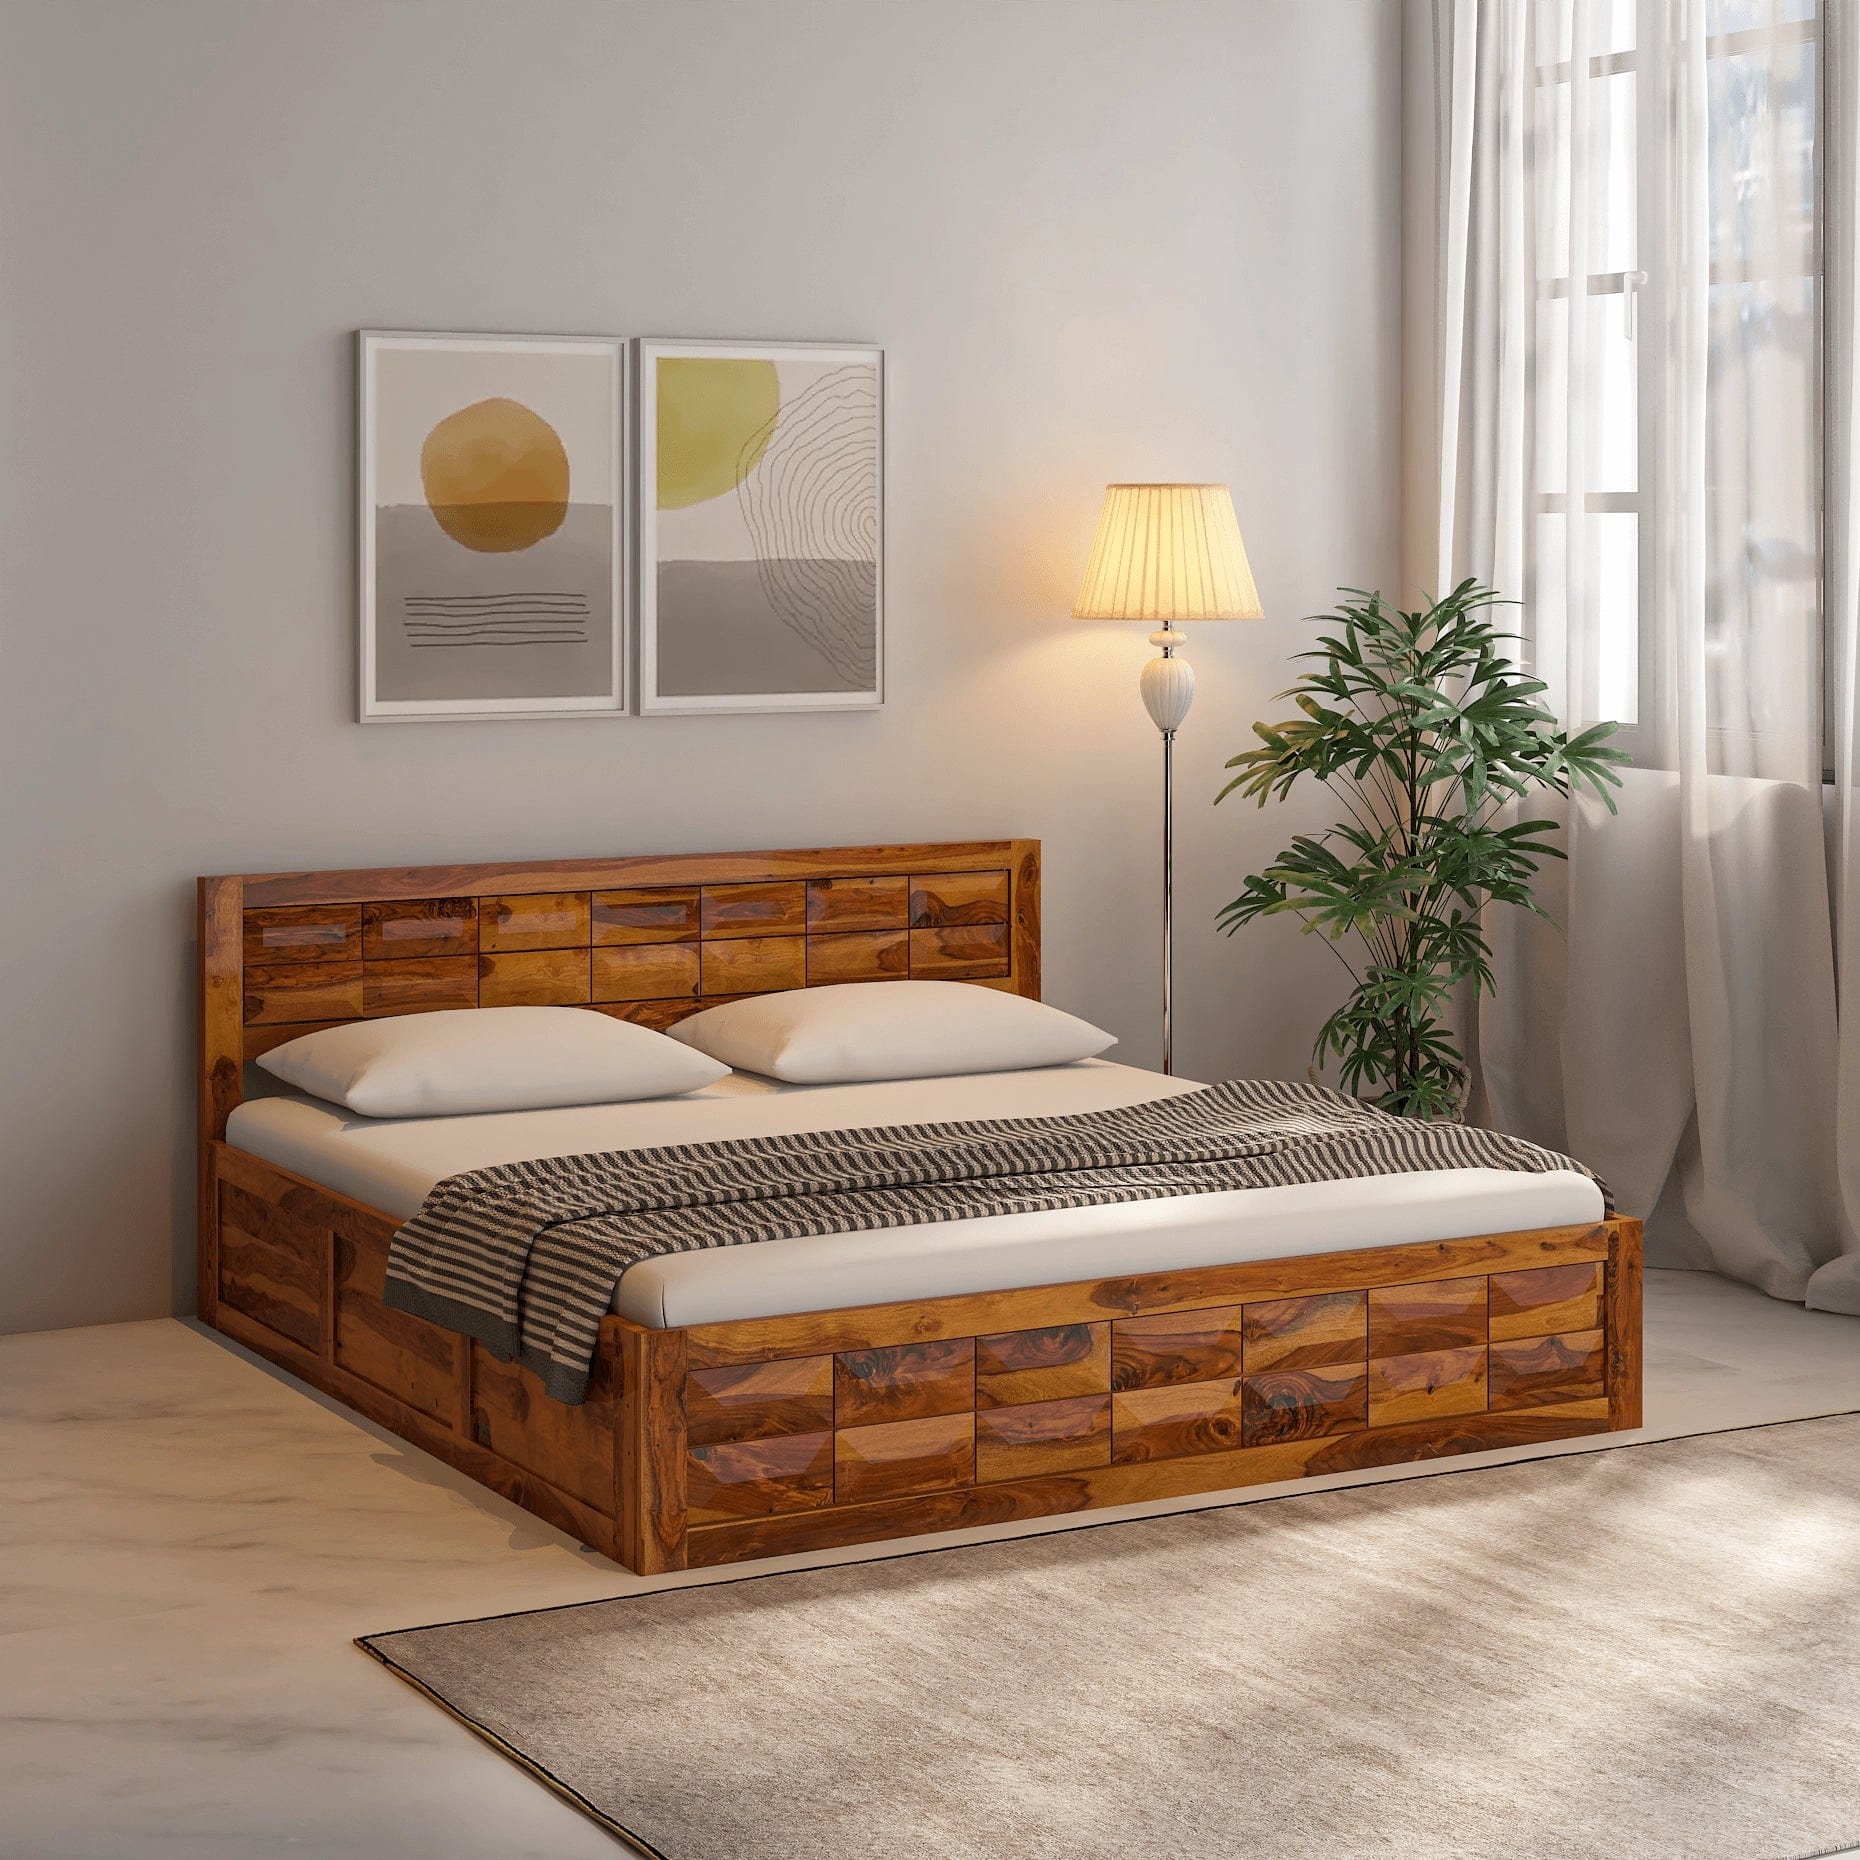 Arcadia Sheesham Wood King Size Bed with Storage